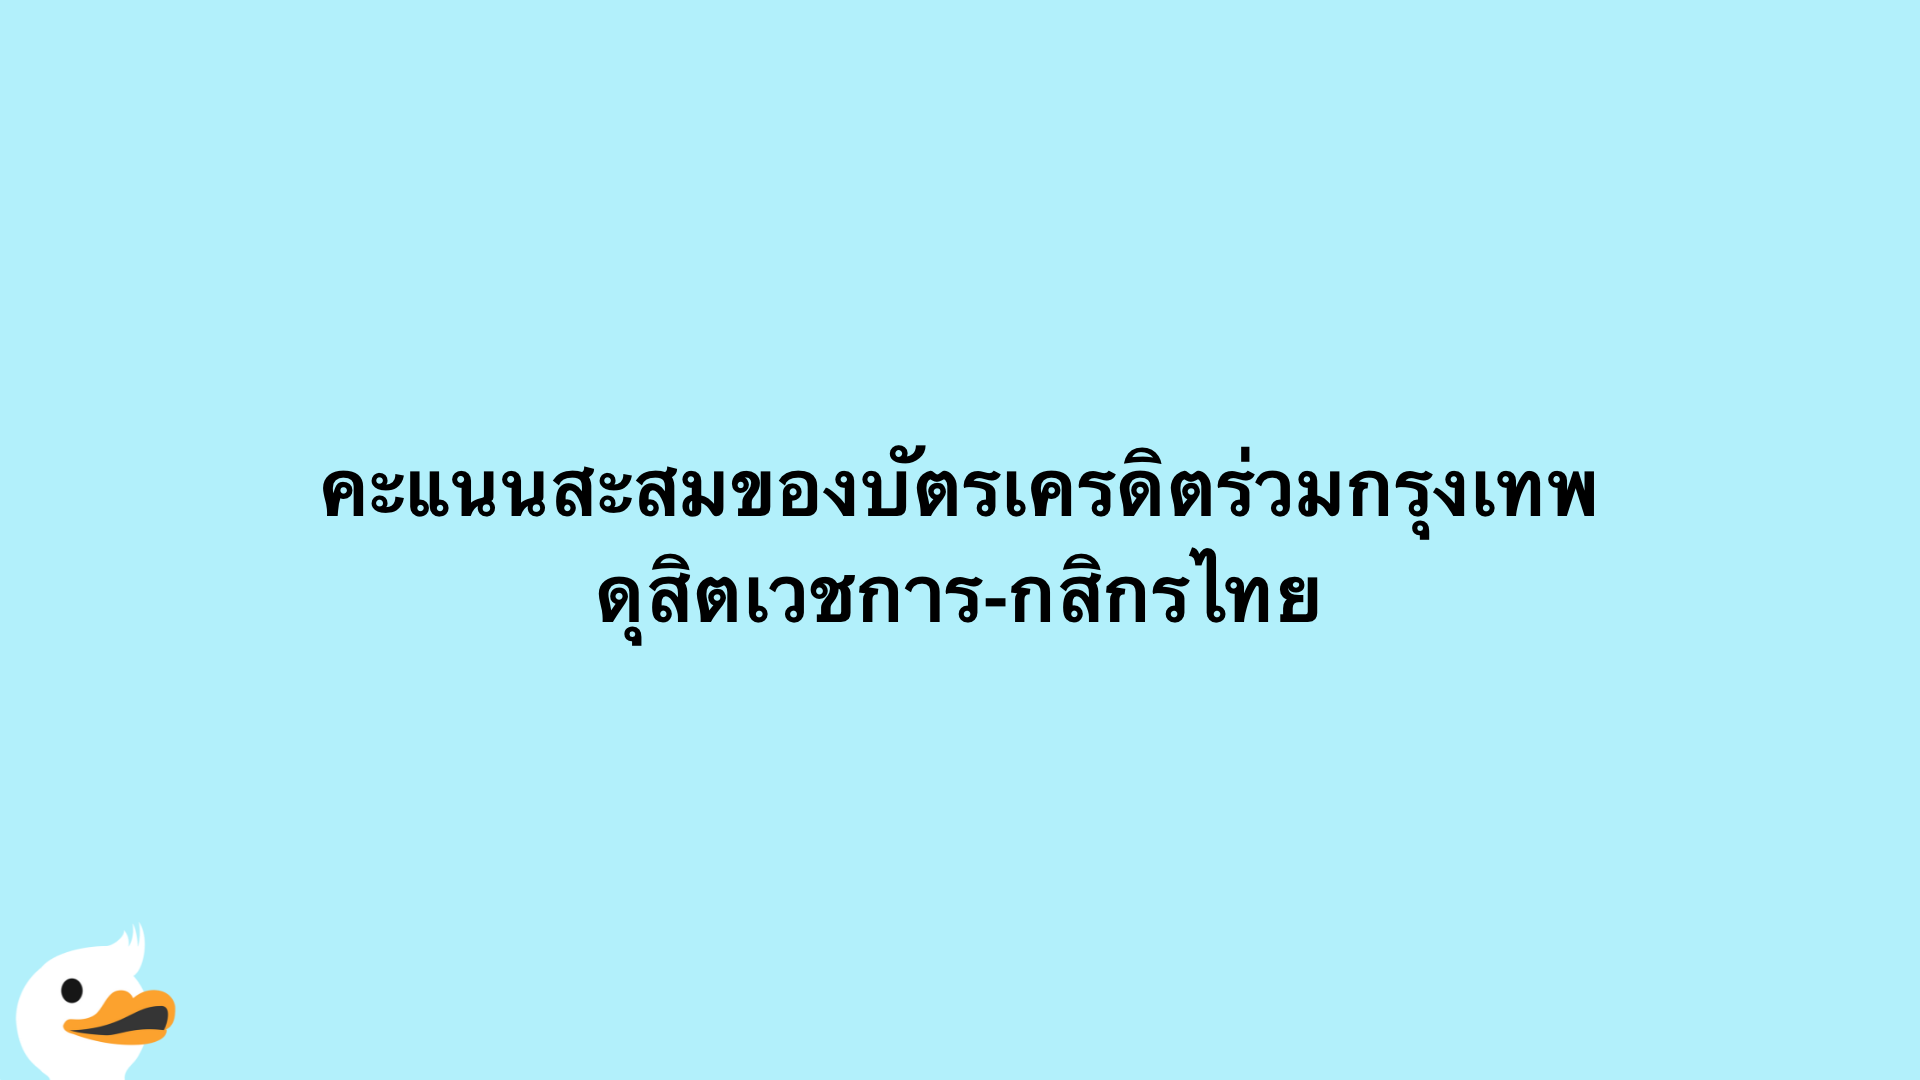 คะแนนสะสมของบัตรเครดิตร่วมกรุงเทพดุสิตเวชการ-กสิกรไทย